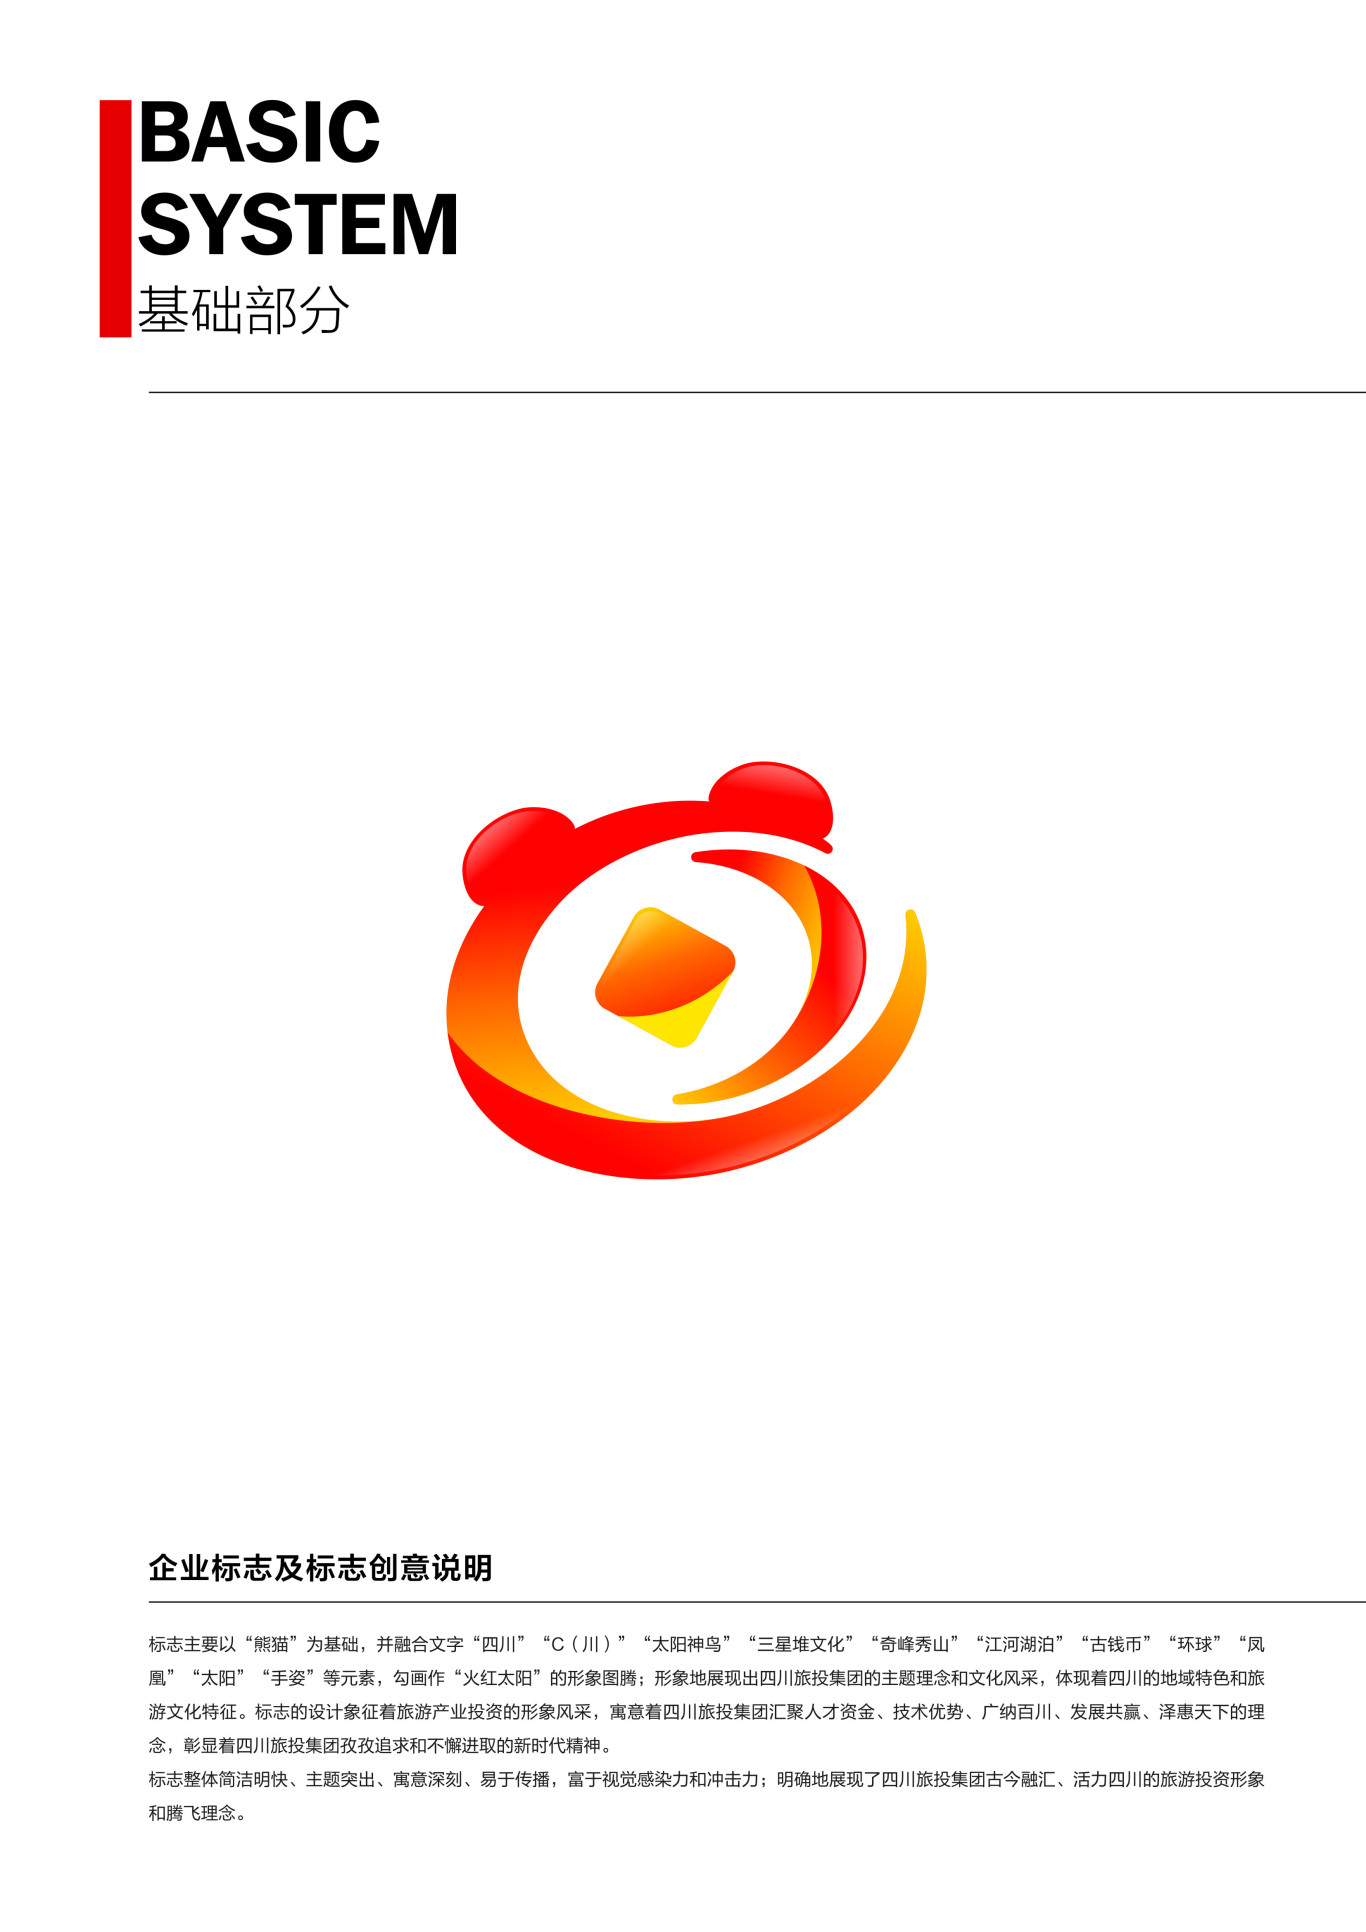 四川省旅游投资集团企业形象识别系统图1